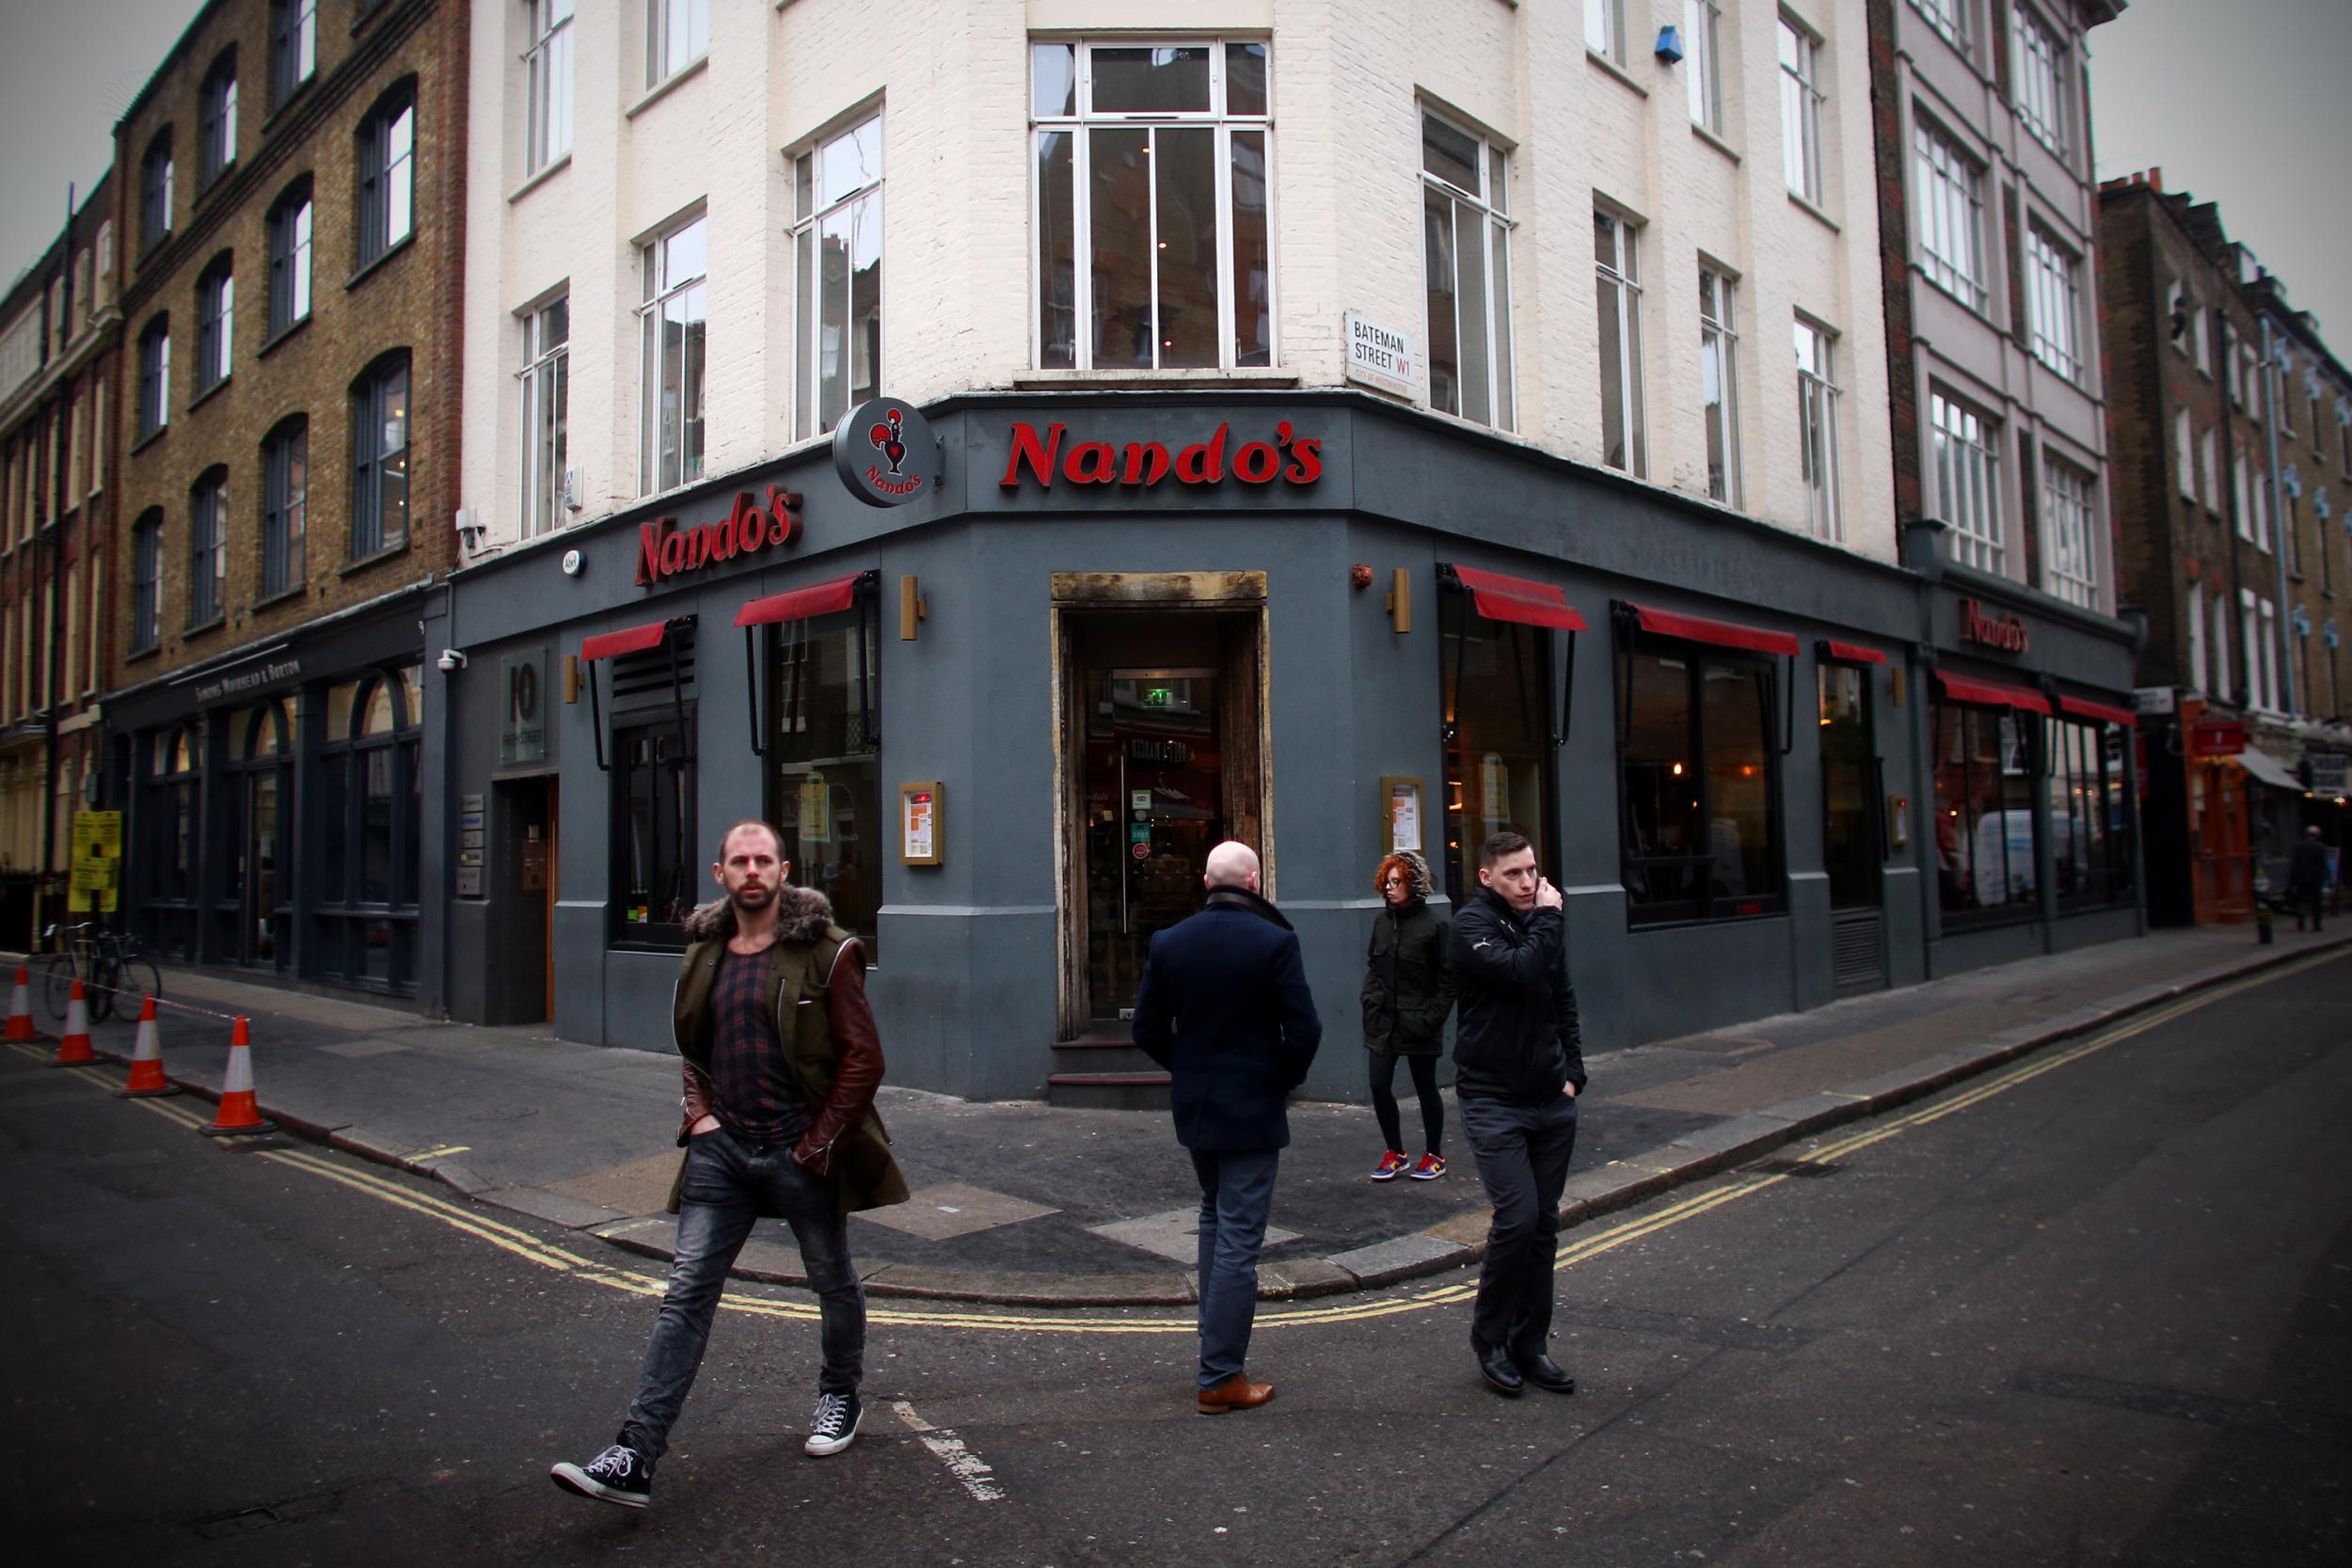 A branch of Nando's in Soho, London